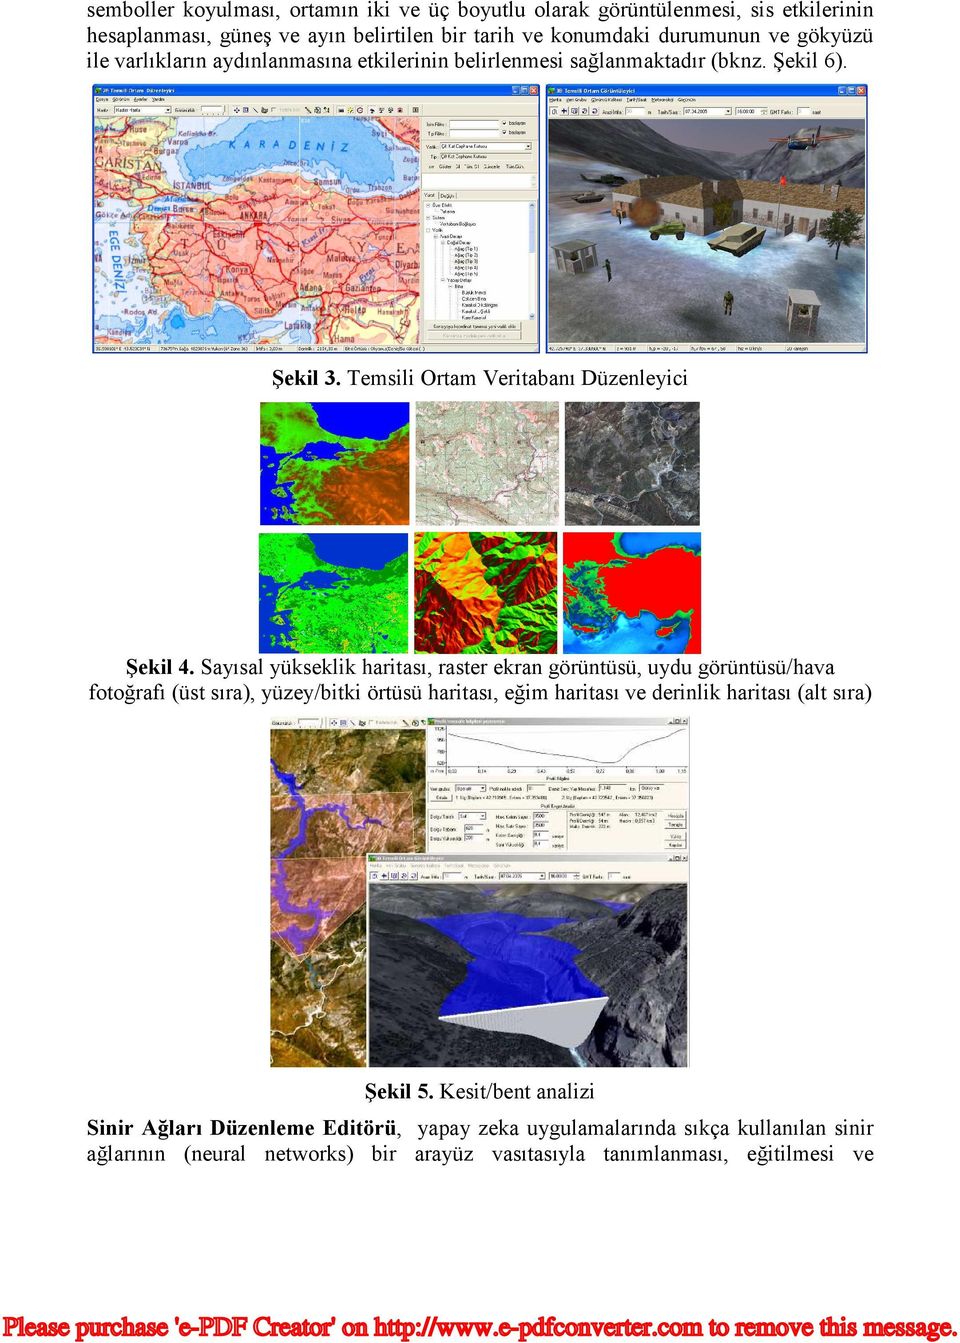 Sayısal yükseklik haritası, raster ekran görüntüsü, uydu görüntüsü/hava fotoğrafı (üst sıra), yüzey/bitki örtüsü haritası, eğim haritası ve derinlik haritası (alt